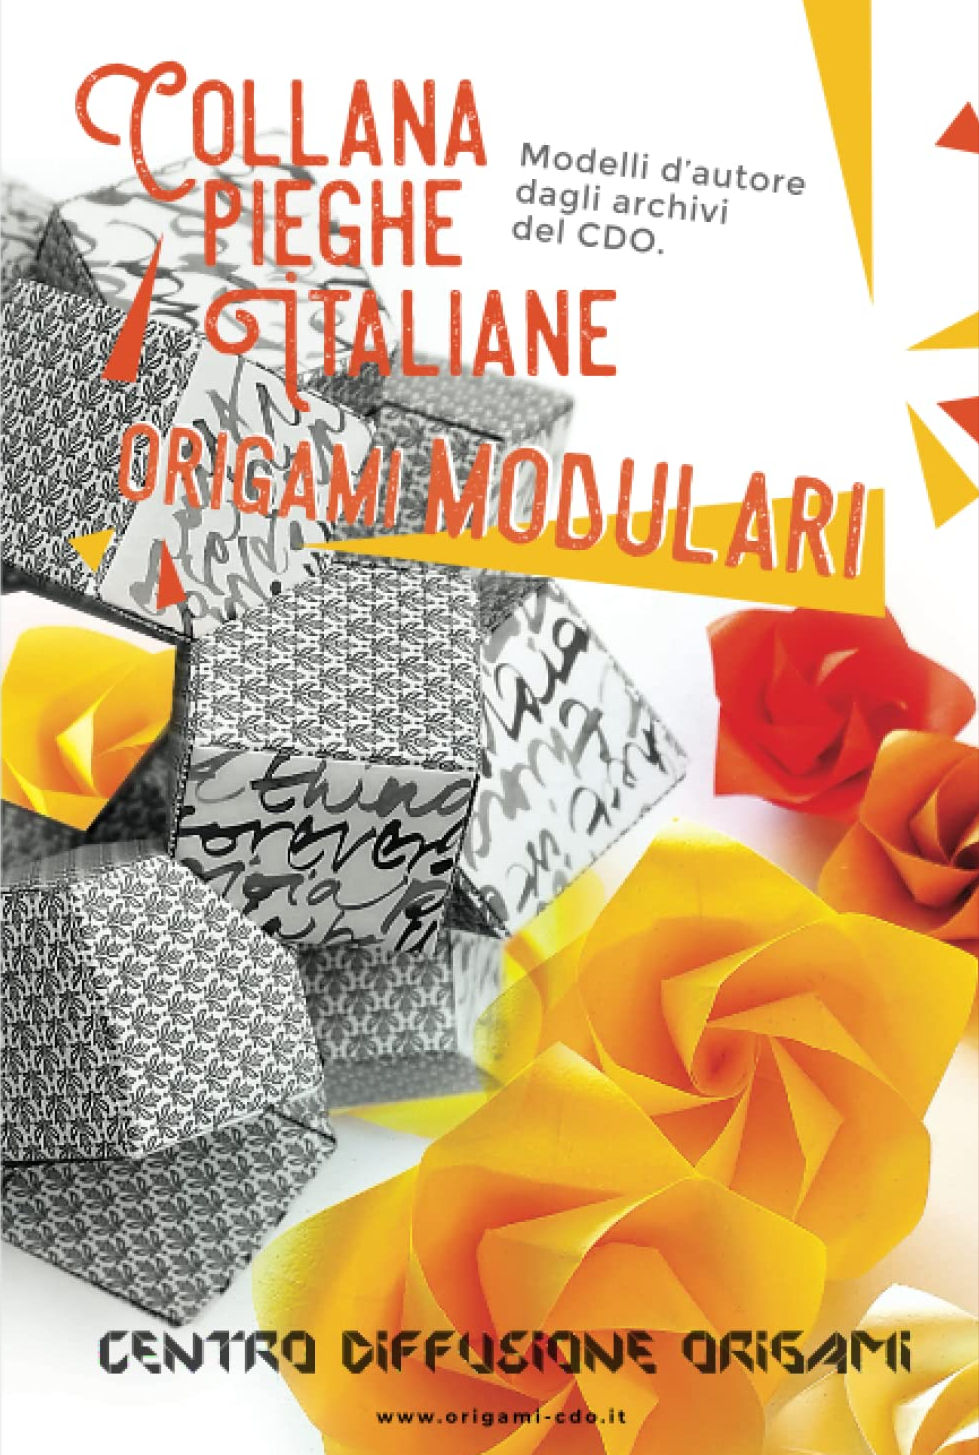 Collana pieghe Italiane - origami MODULARI : page 14.